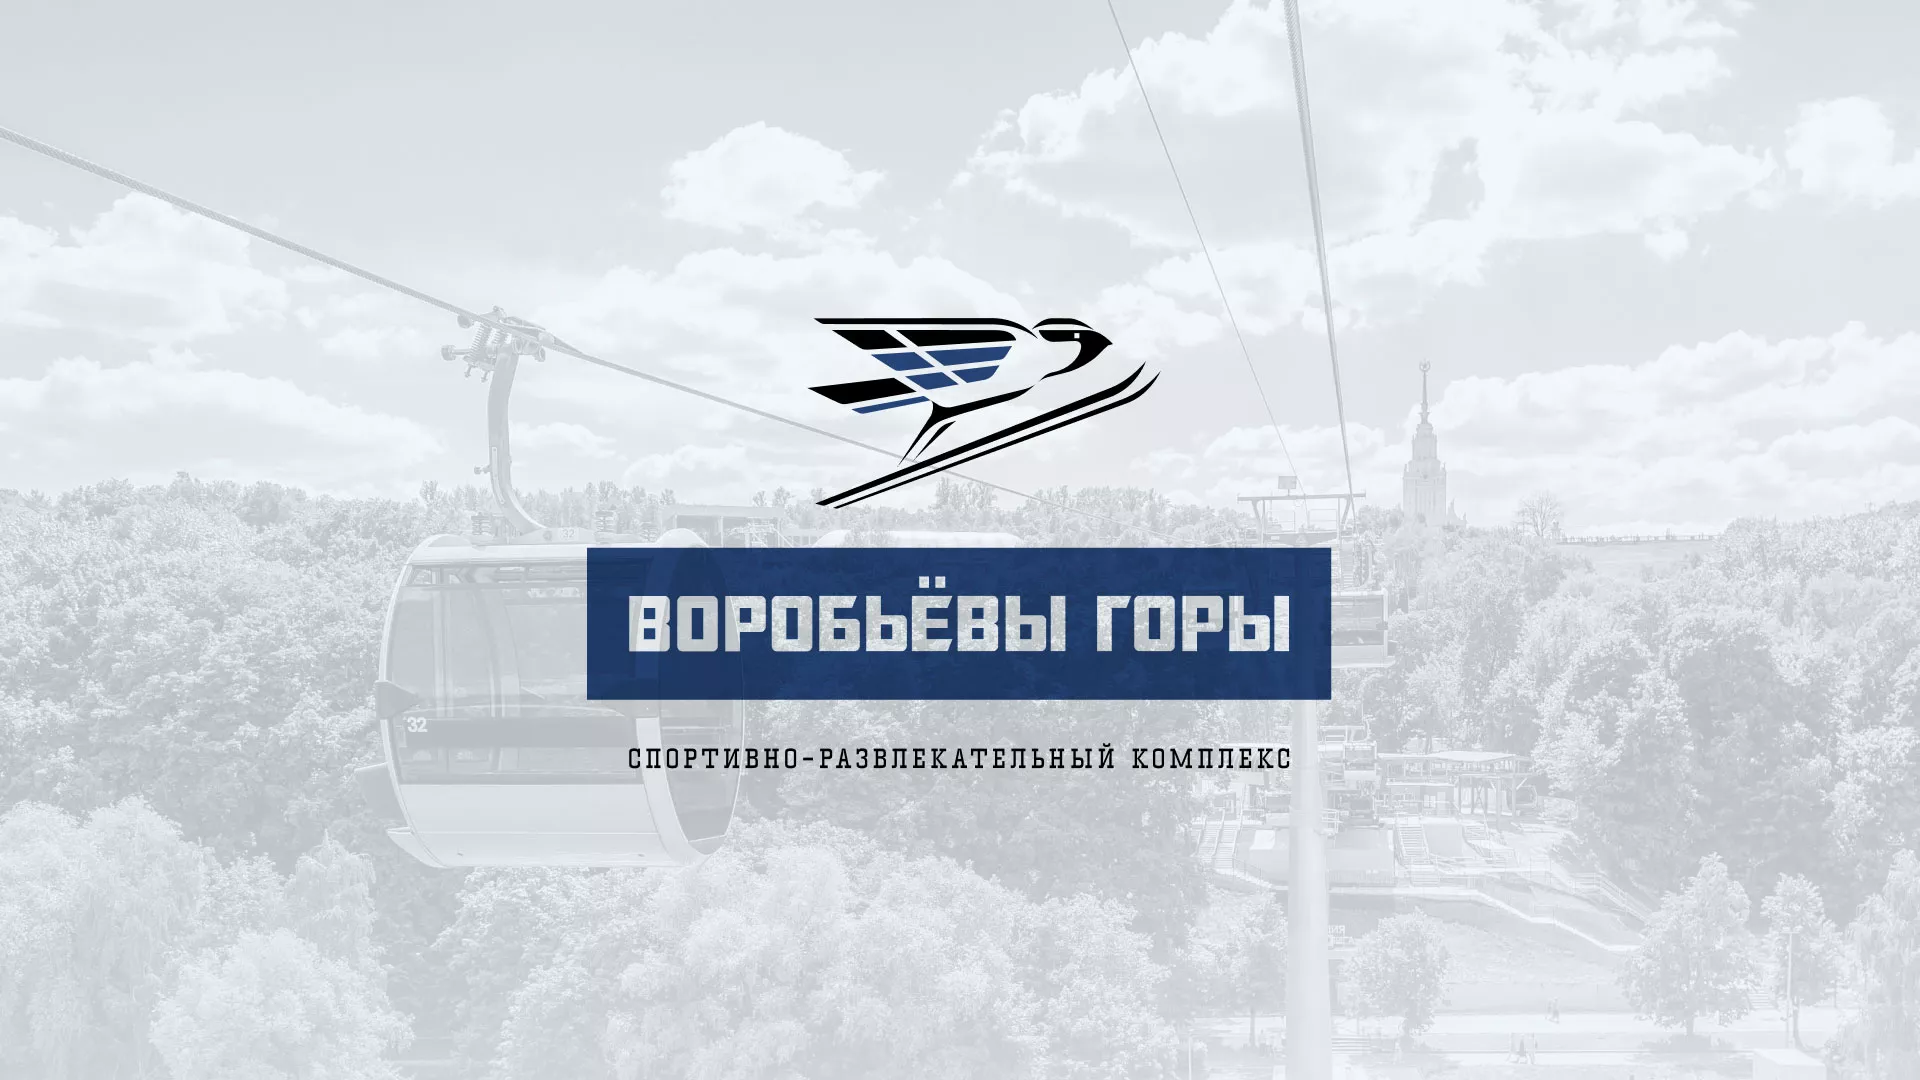 Разработка сайта в Черепаново для спортивно-развлекательного комплекса «Воробьёвы горы»